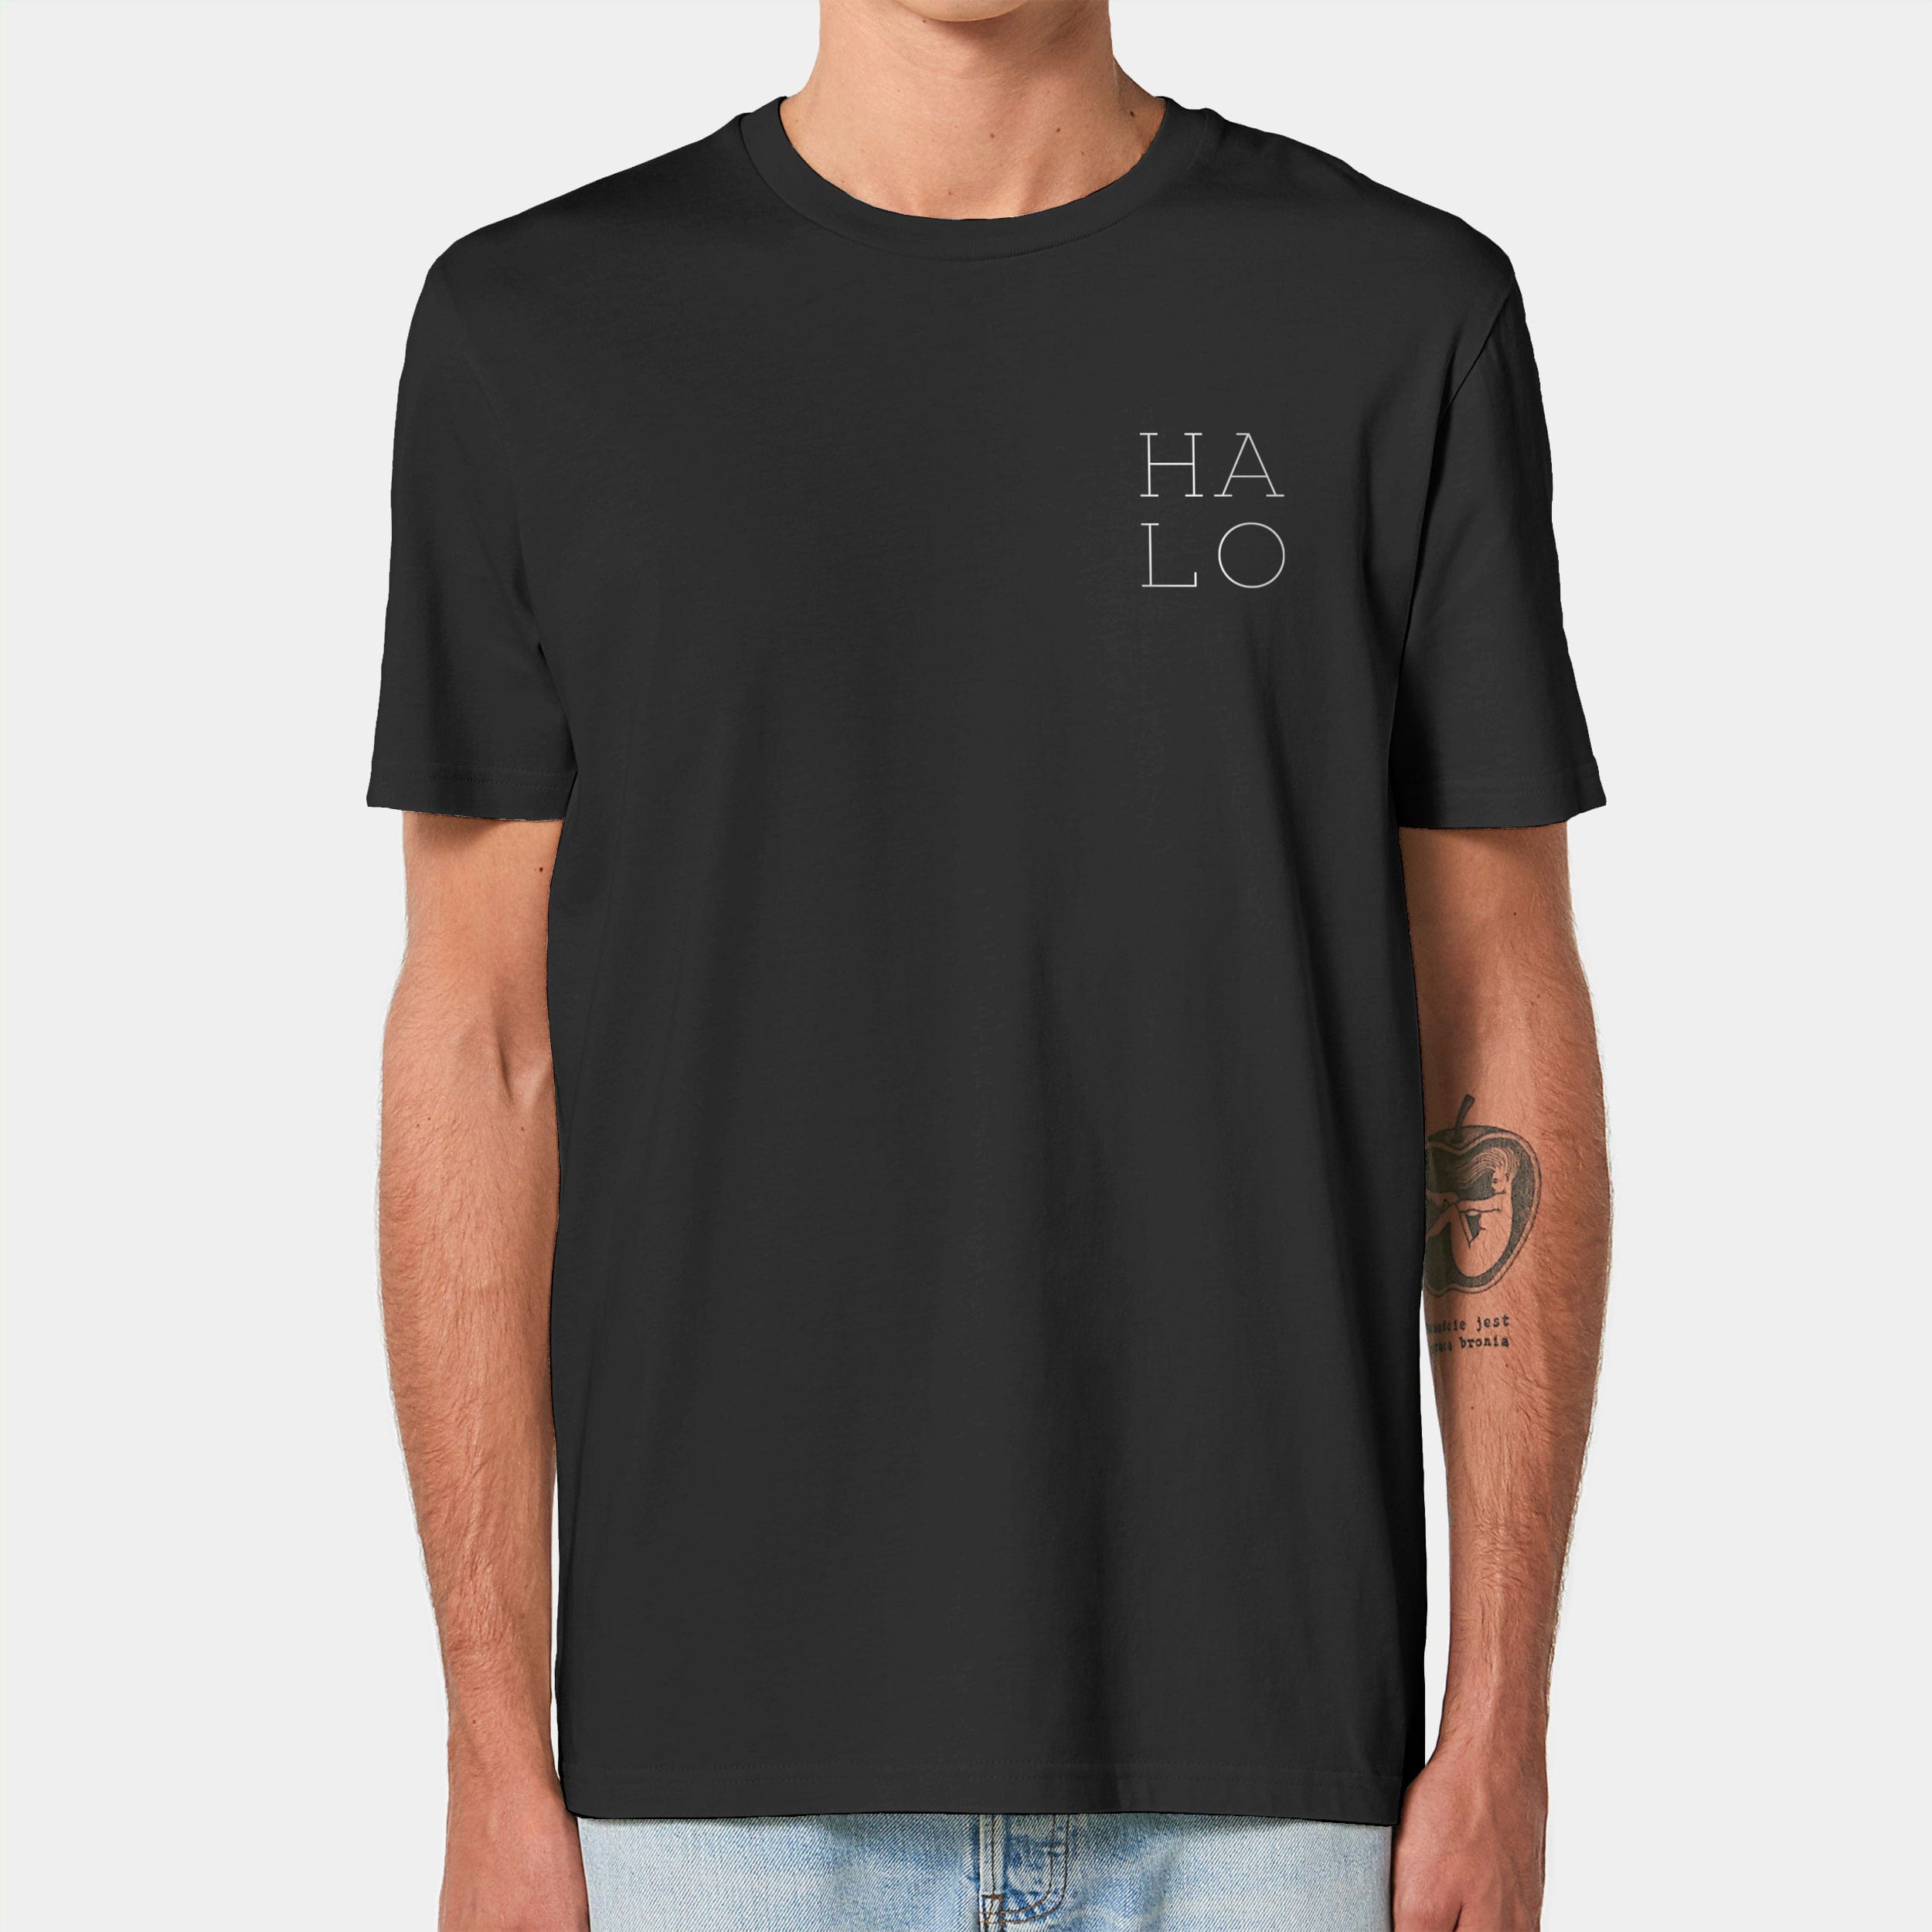 HEITER & LÄSSIG T-Shirt "HALO" XXS / schwarz - aus nachhaltiger und fairer Produktion